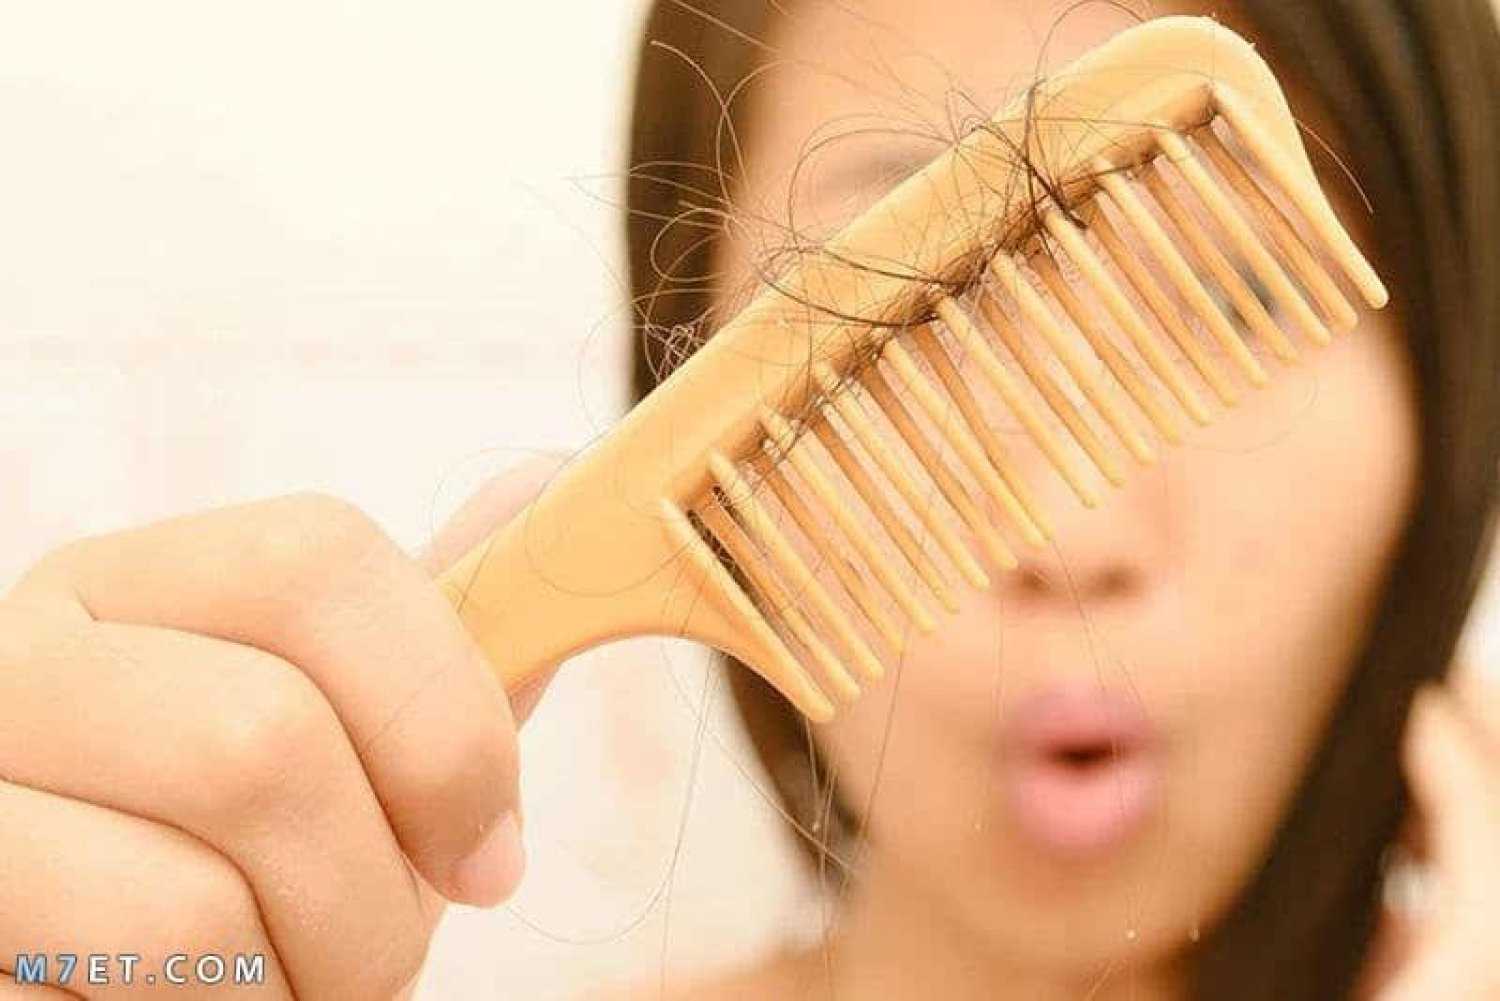 افضل علاج لتساقط الشعر